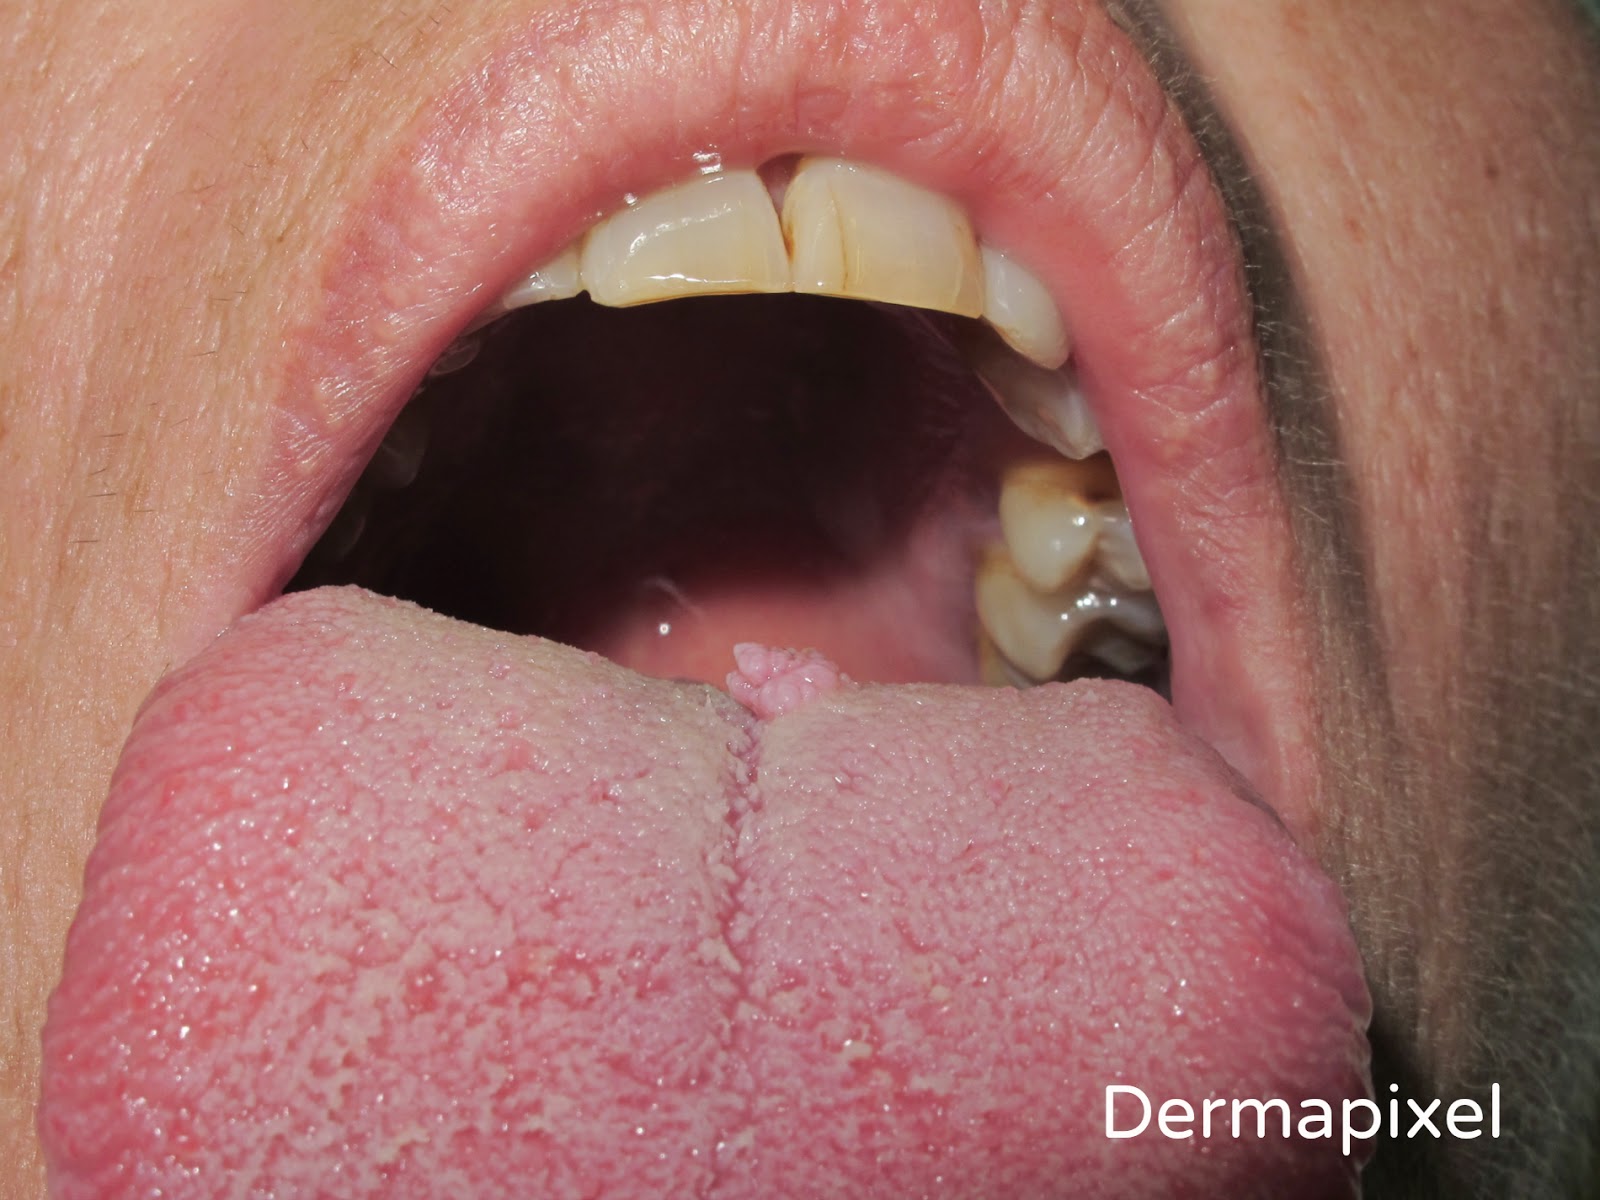 Lesion de papiloma en boca - Sintomas virus papiloma en boca, Papilloma virus e herpes